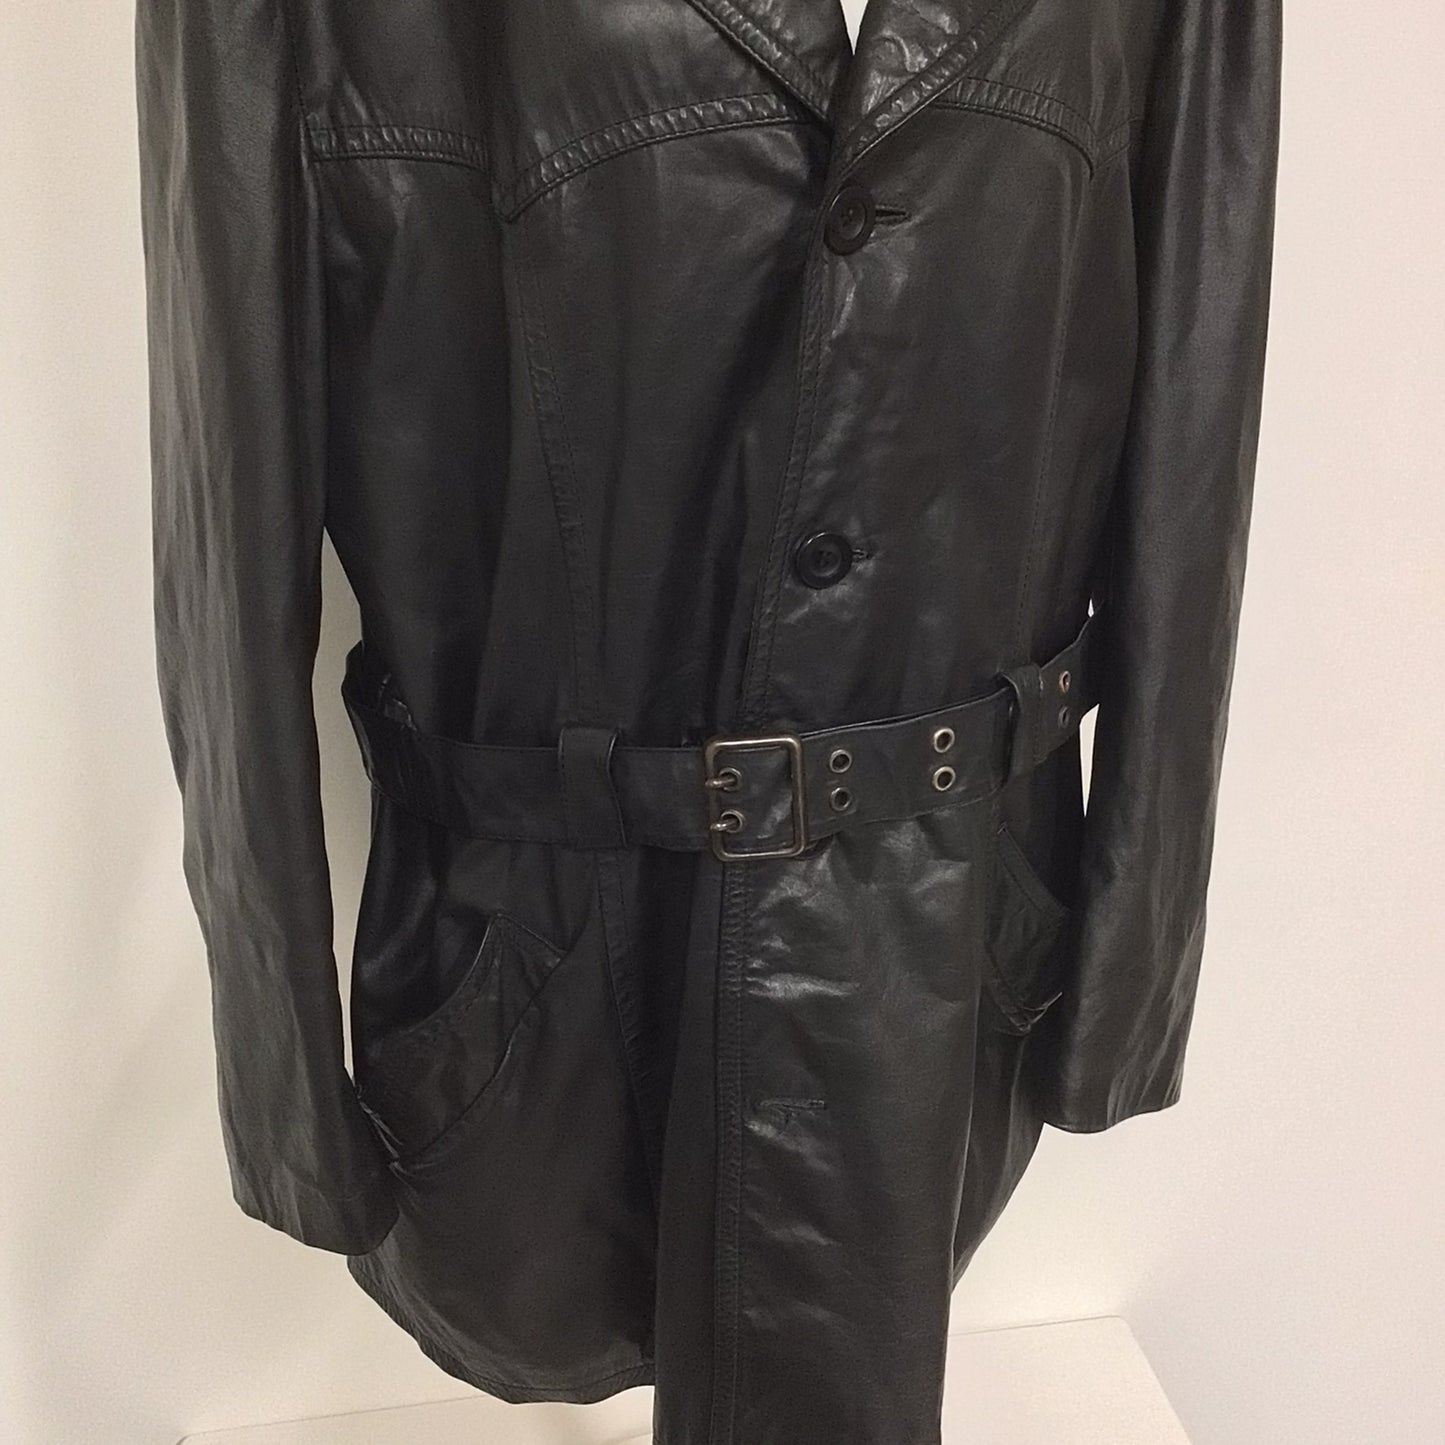 Vintage Finn Fant Black Belted Long Leather Jacket Size L (52 on label)